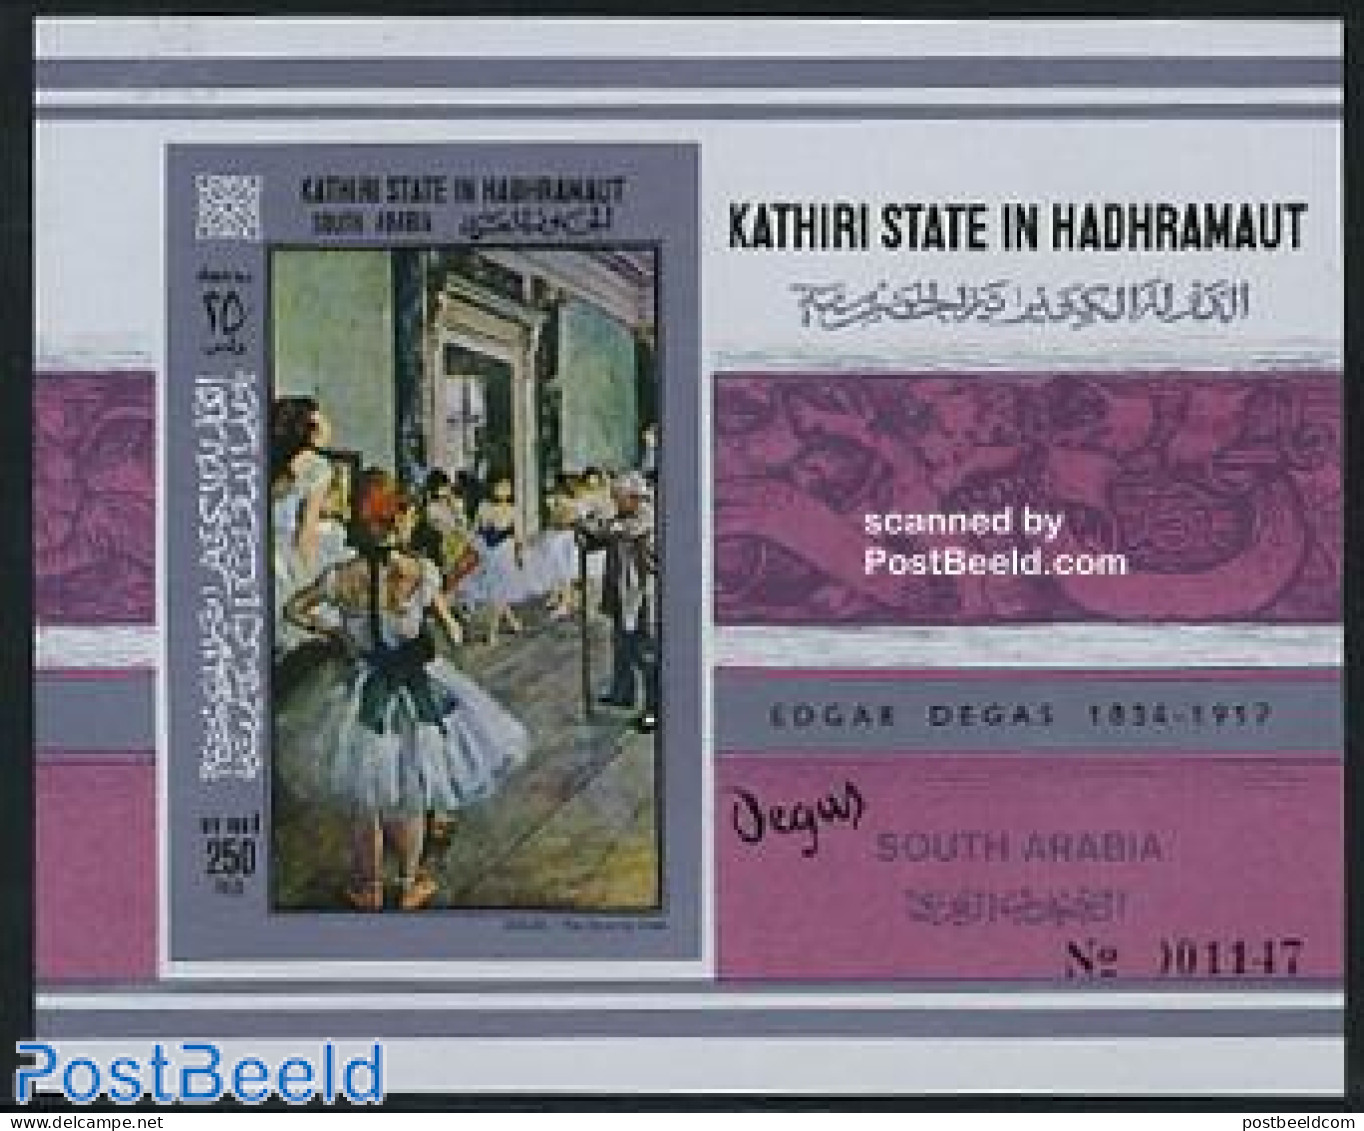 Aden 1967 KSiH, Degas Painting S/s Imperforated, Mint NH, Performance Art - Dance & Ballet - Art - Edgar Degas - Moder.. - Dans